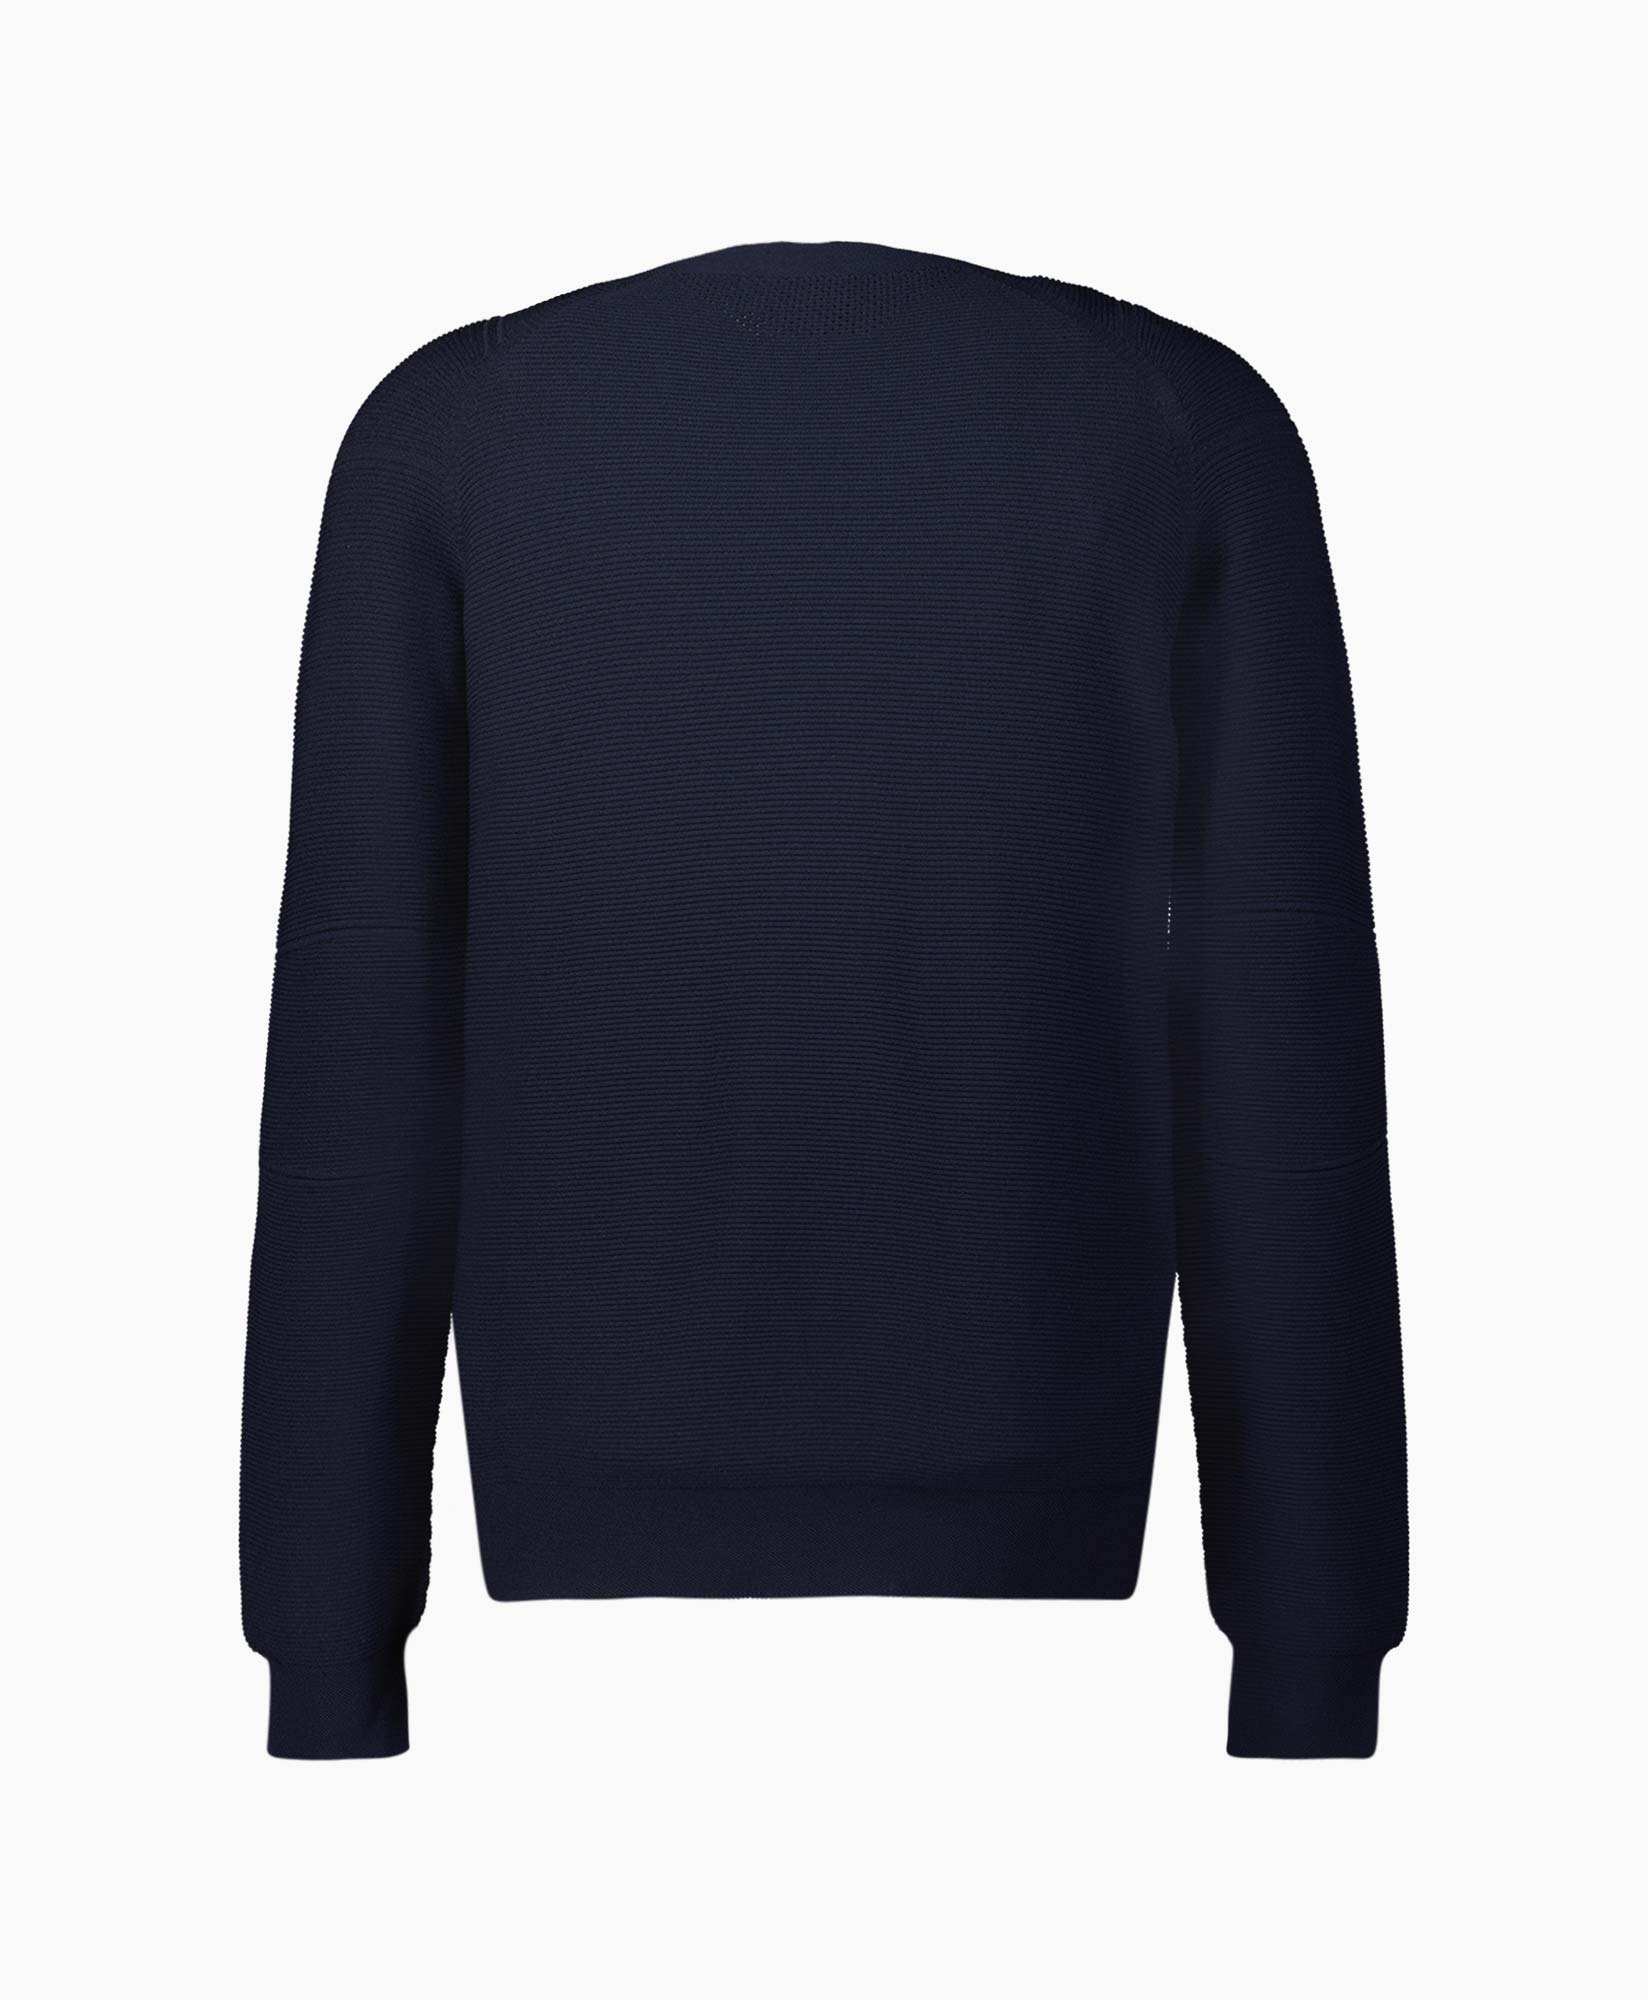 Sweater Fosop Donker Blauw